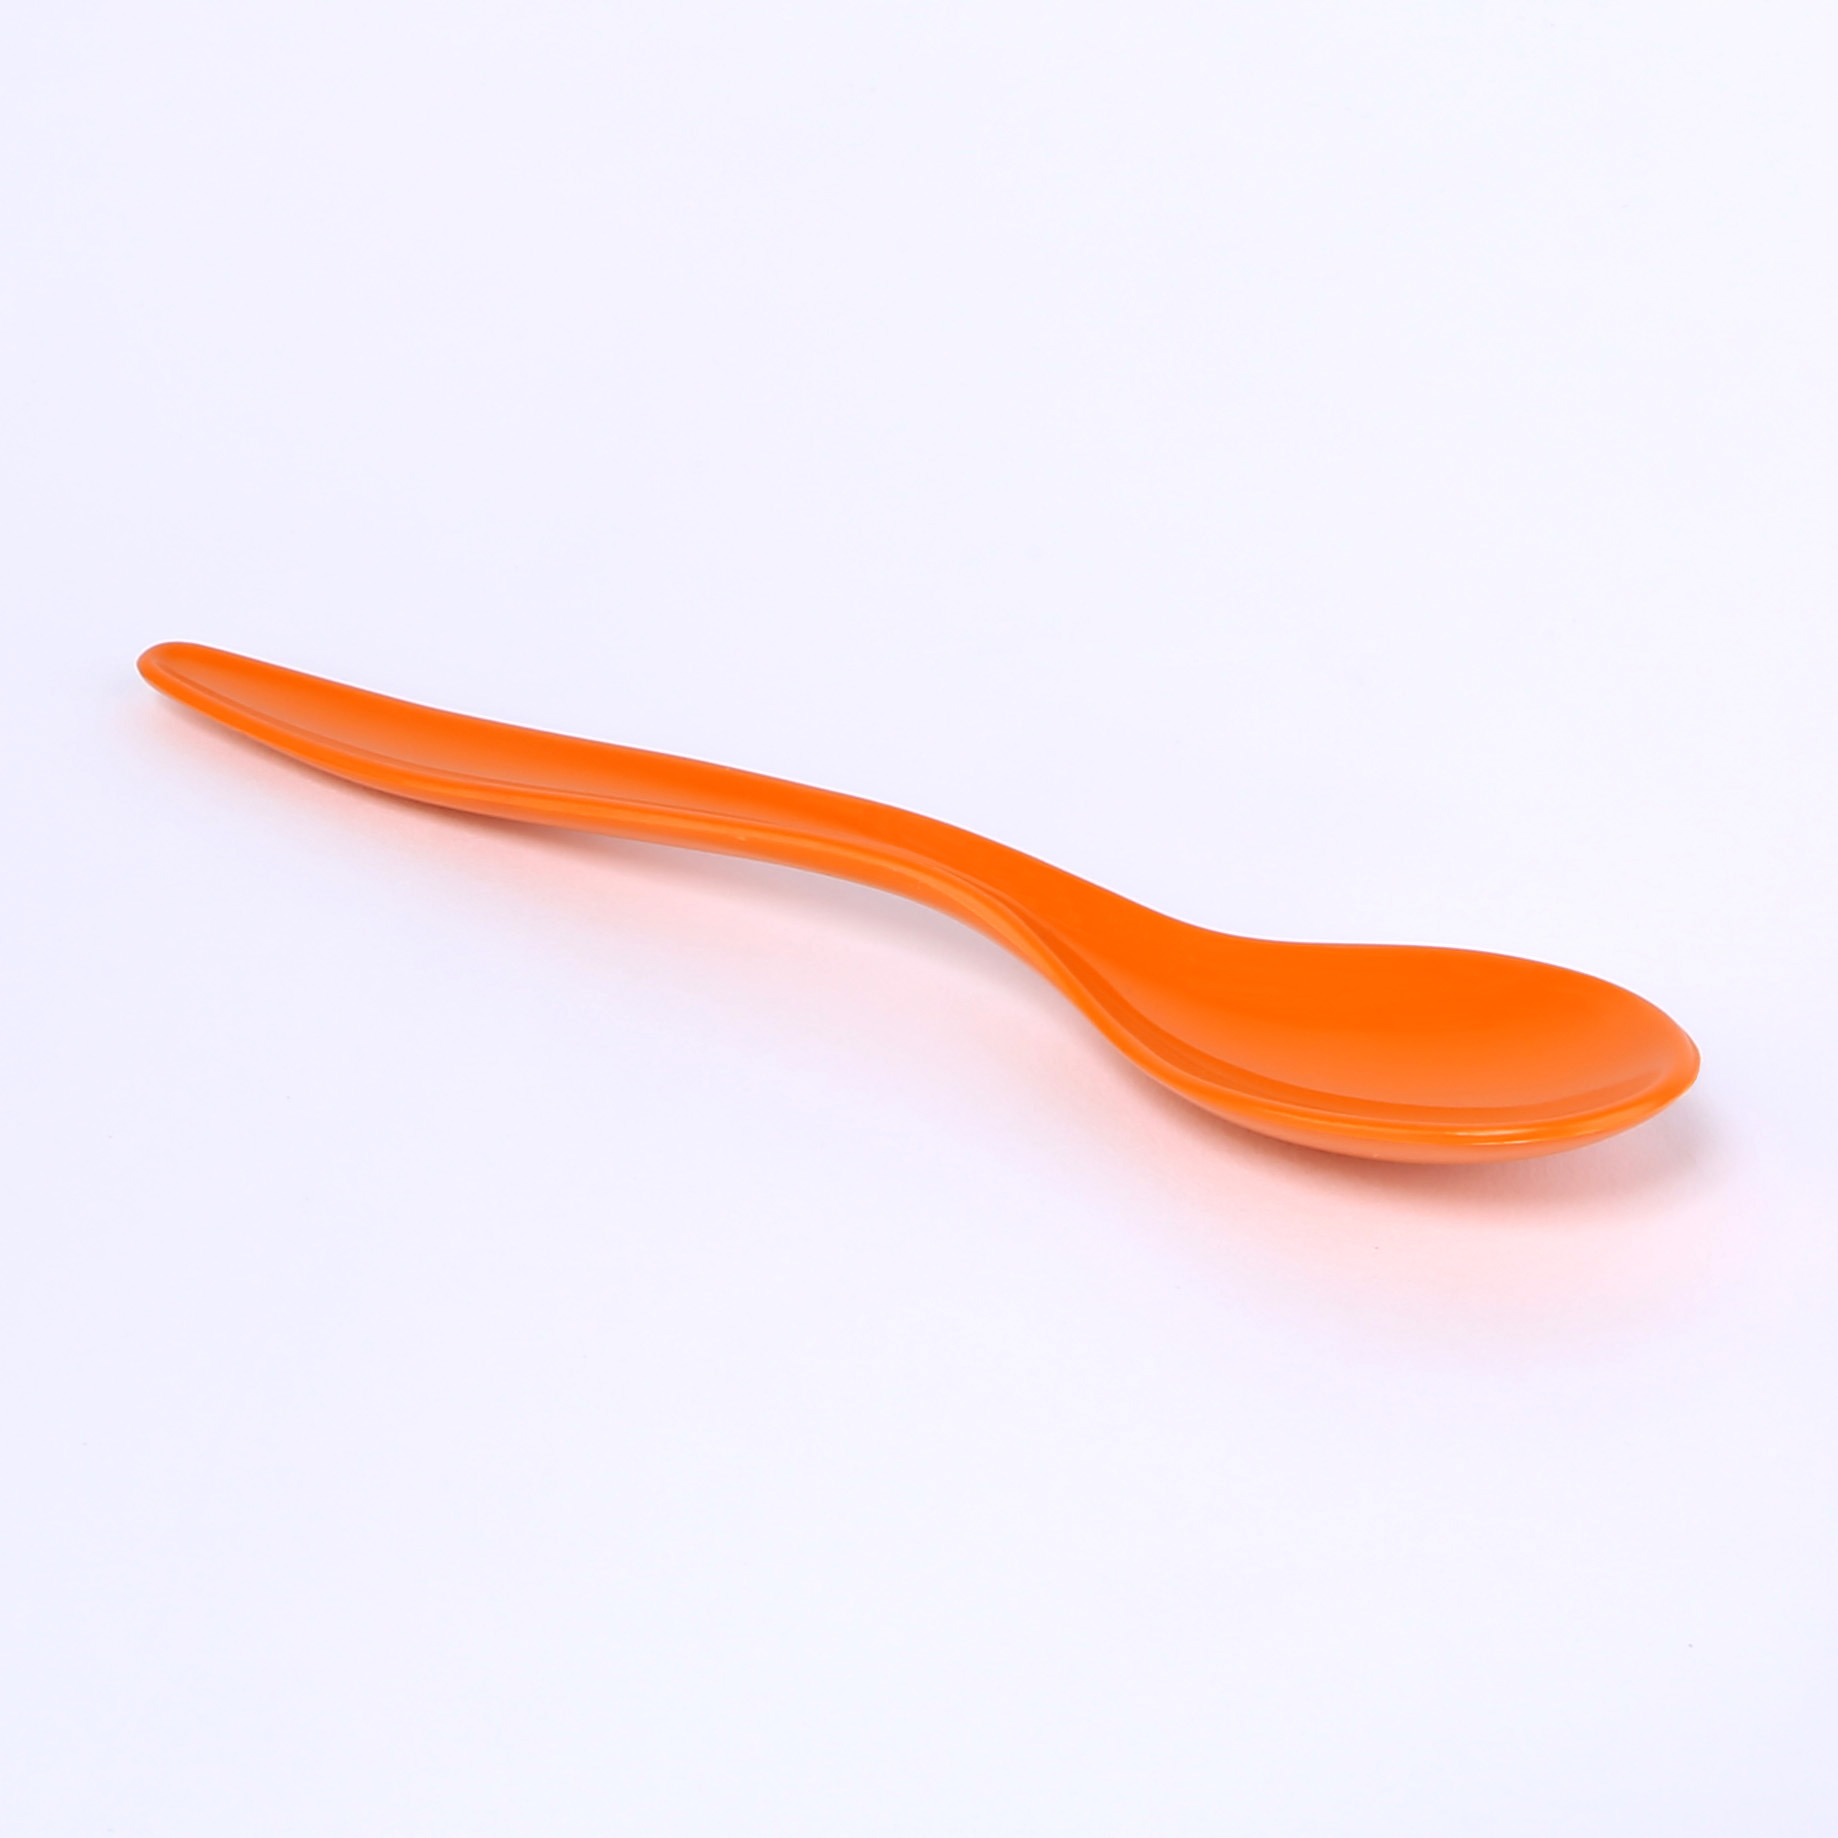 vaLon Zephyr Löffel 15,5 cm aus schadstofffreiem Kunststoff in der Farbe orange. Inhalt: 6 Stück.